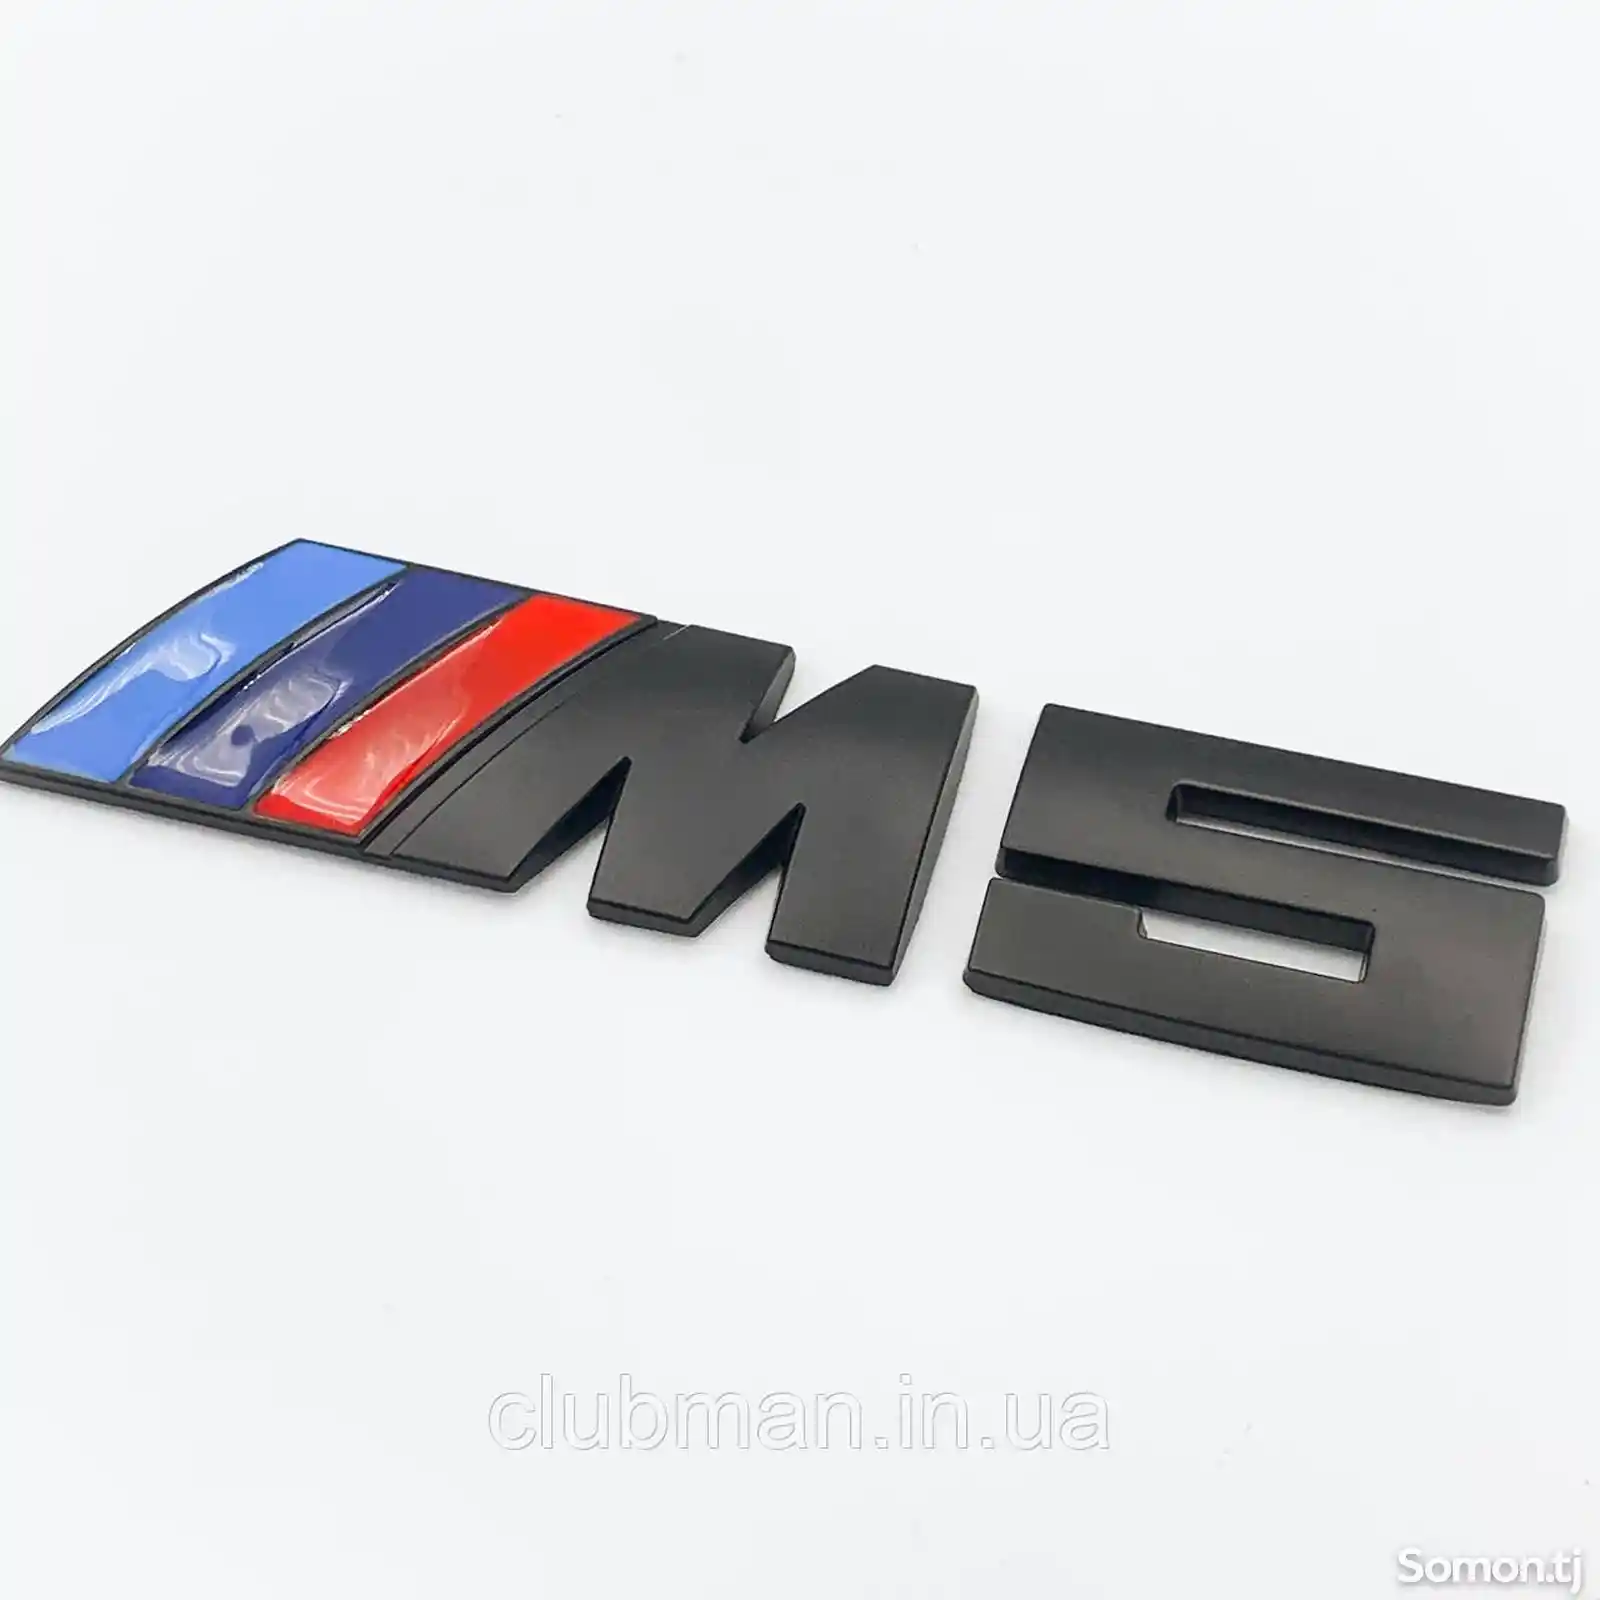 Эмблема M5 для BMW-2